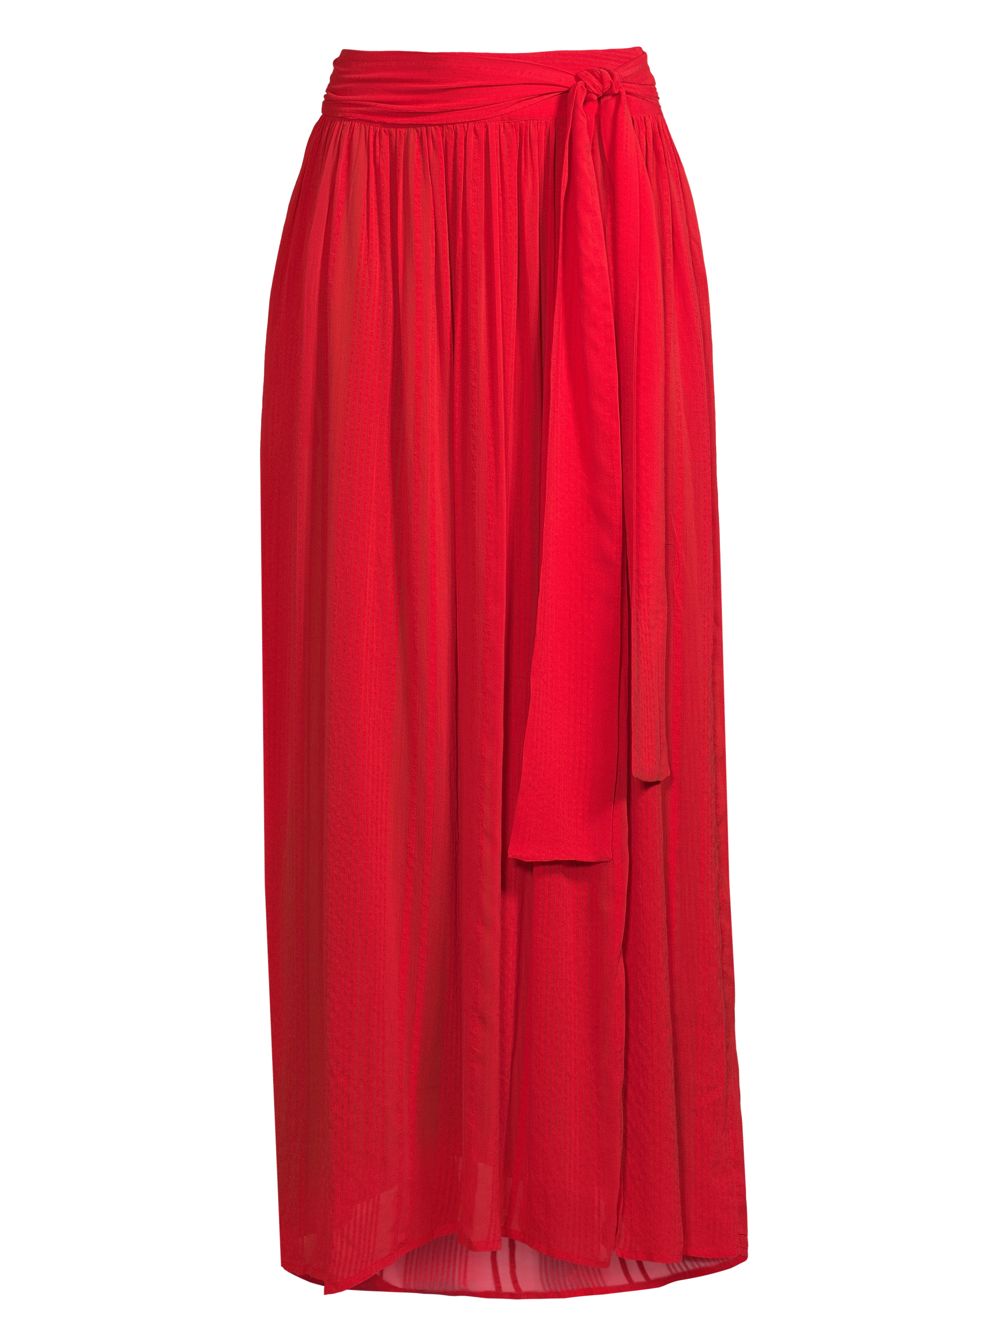 Длинная юбка Kyla с завязками на талии Evarae, красный